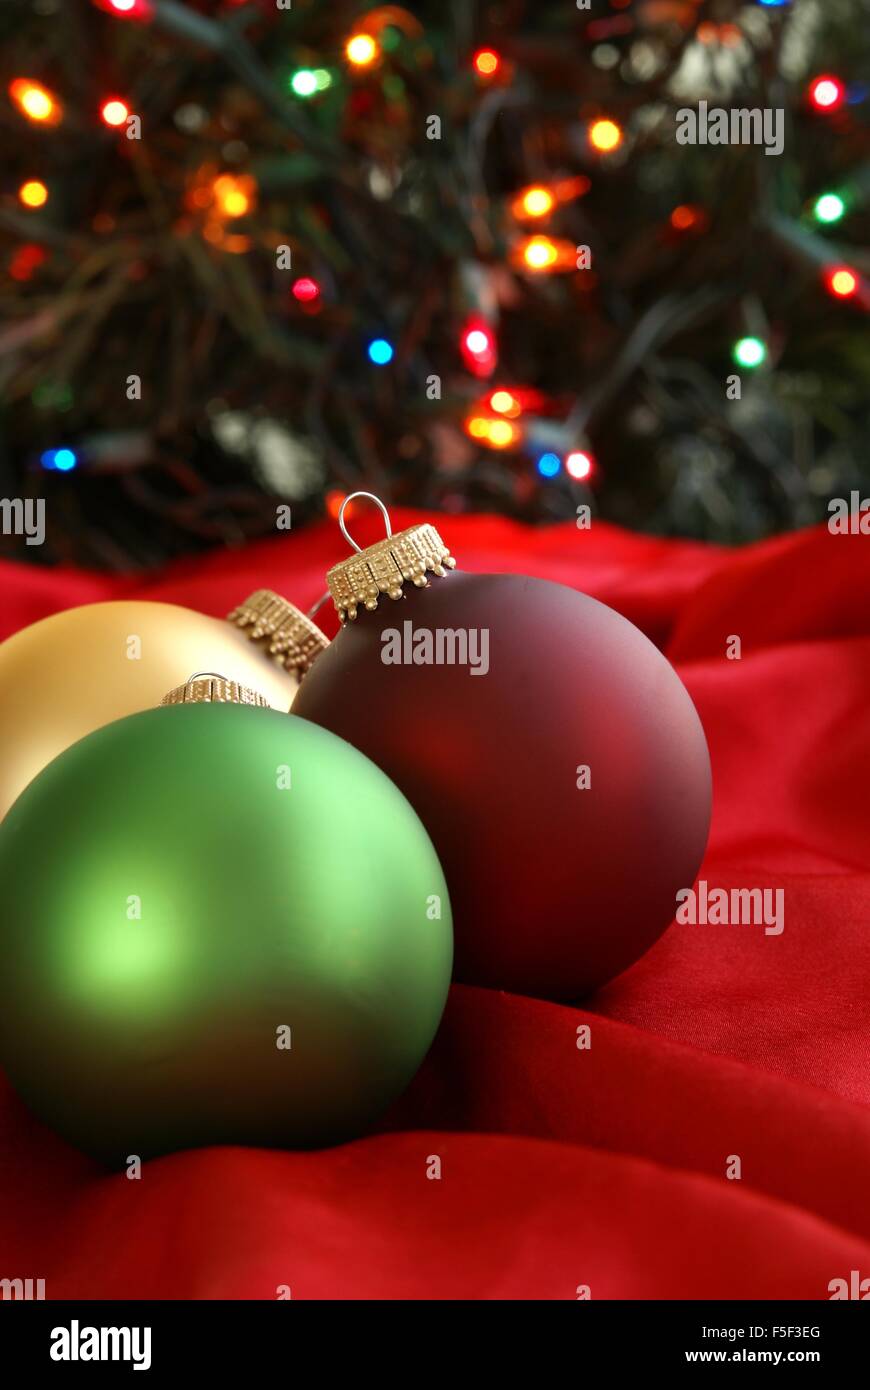 Albero Di Natale Rosso Oro E Verde.Addobbi Natale Di Rosso Verde E Oro Annidato In Seta Tessuto Rosso Con Albero Di Natale In Background Foto Stock Alamy